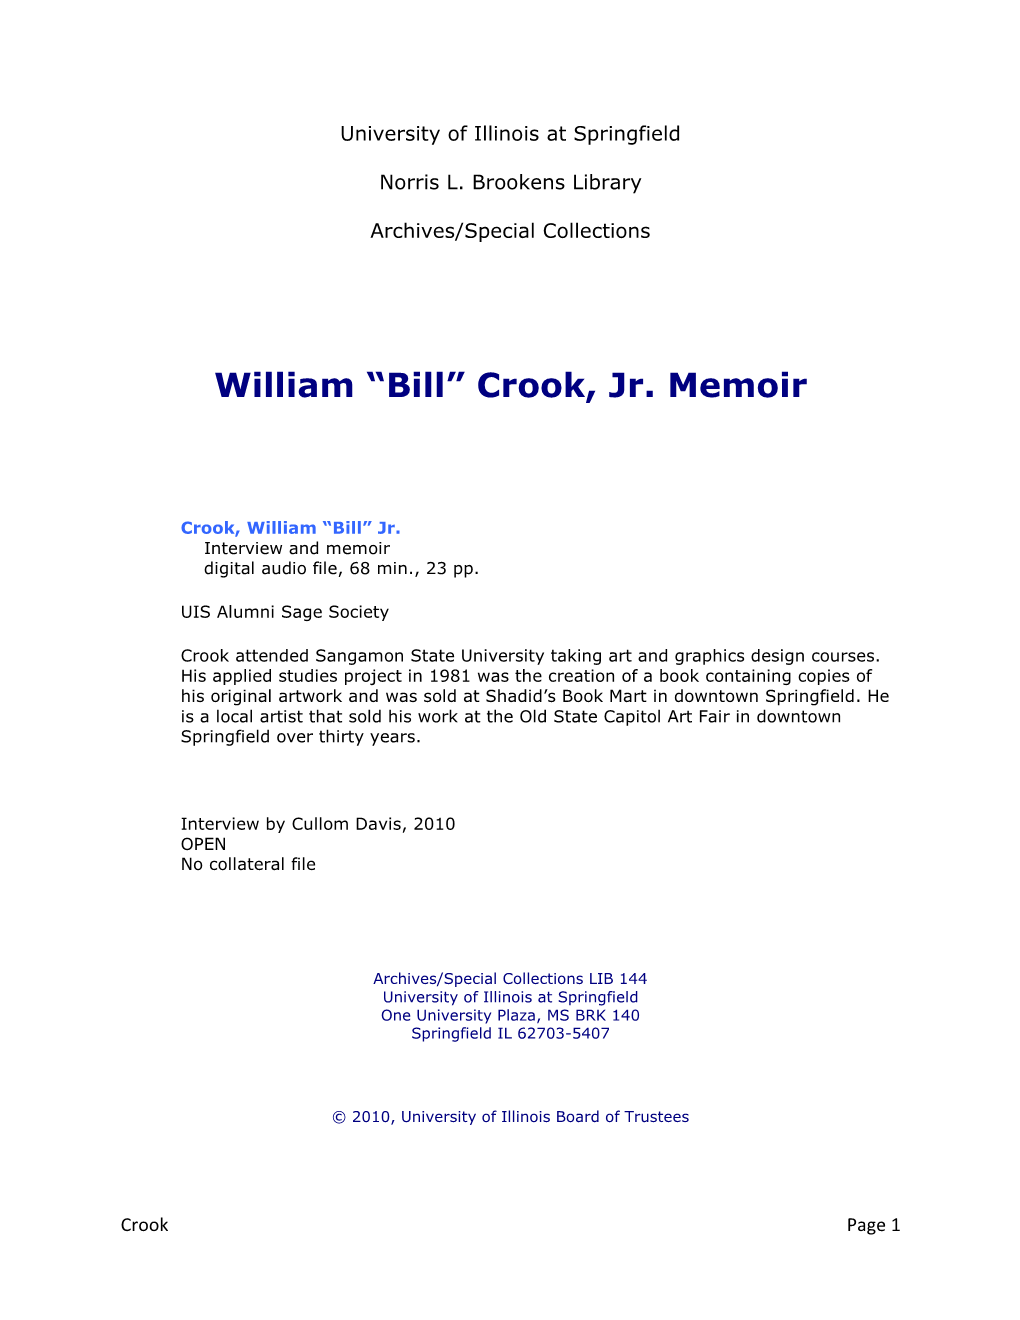 William “Bill” Crook, Jr. Memoir